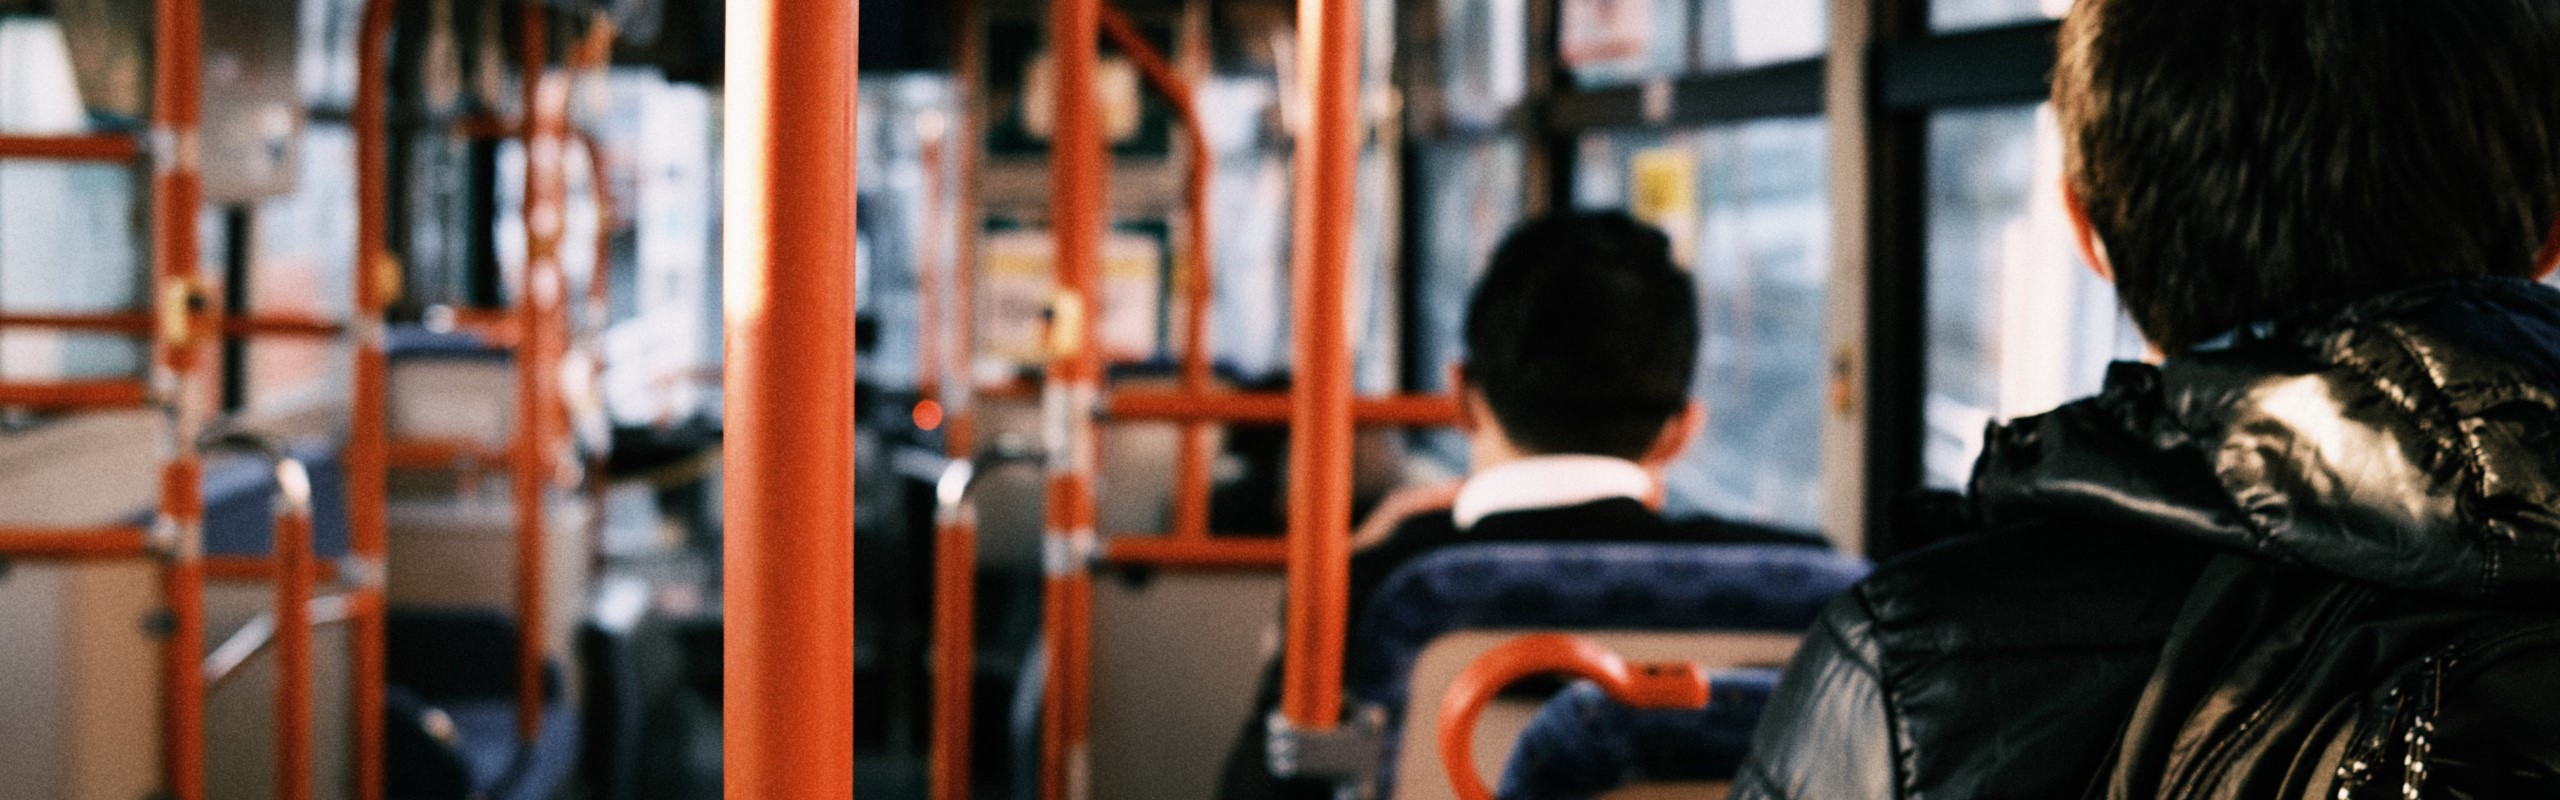 Öffentlicher Personennahverkehr - Panoramaschnitt Innenraum Linienbus mit Personen